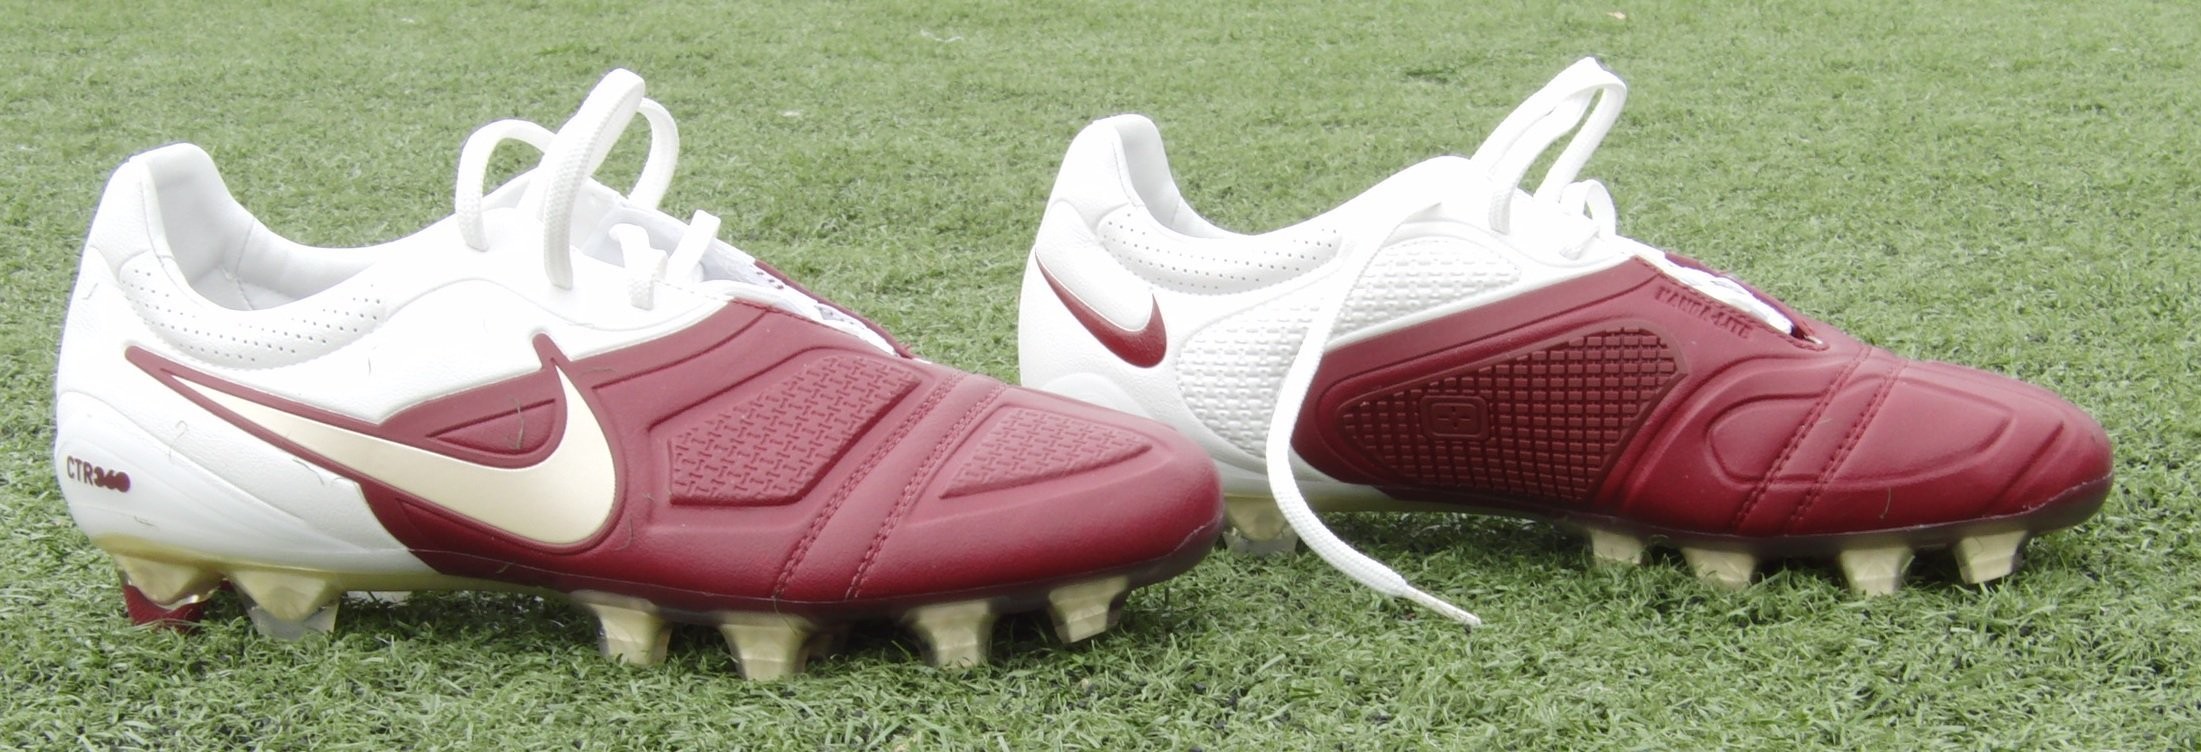 足球鞋顶级人造材料:Nike Kanga-Lite人造袋鼠